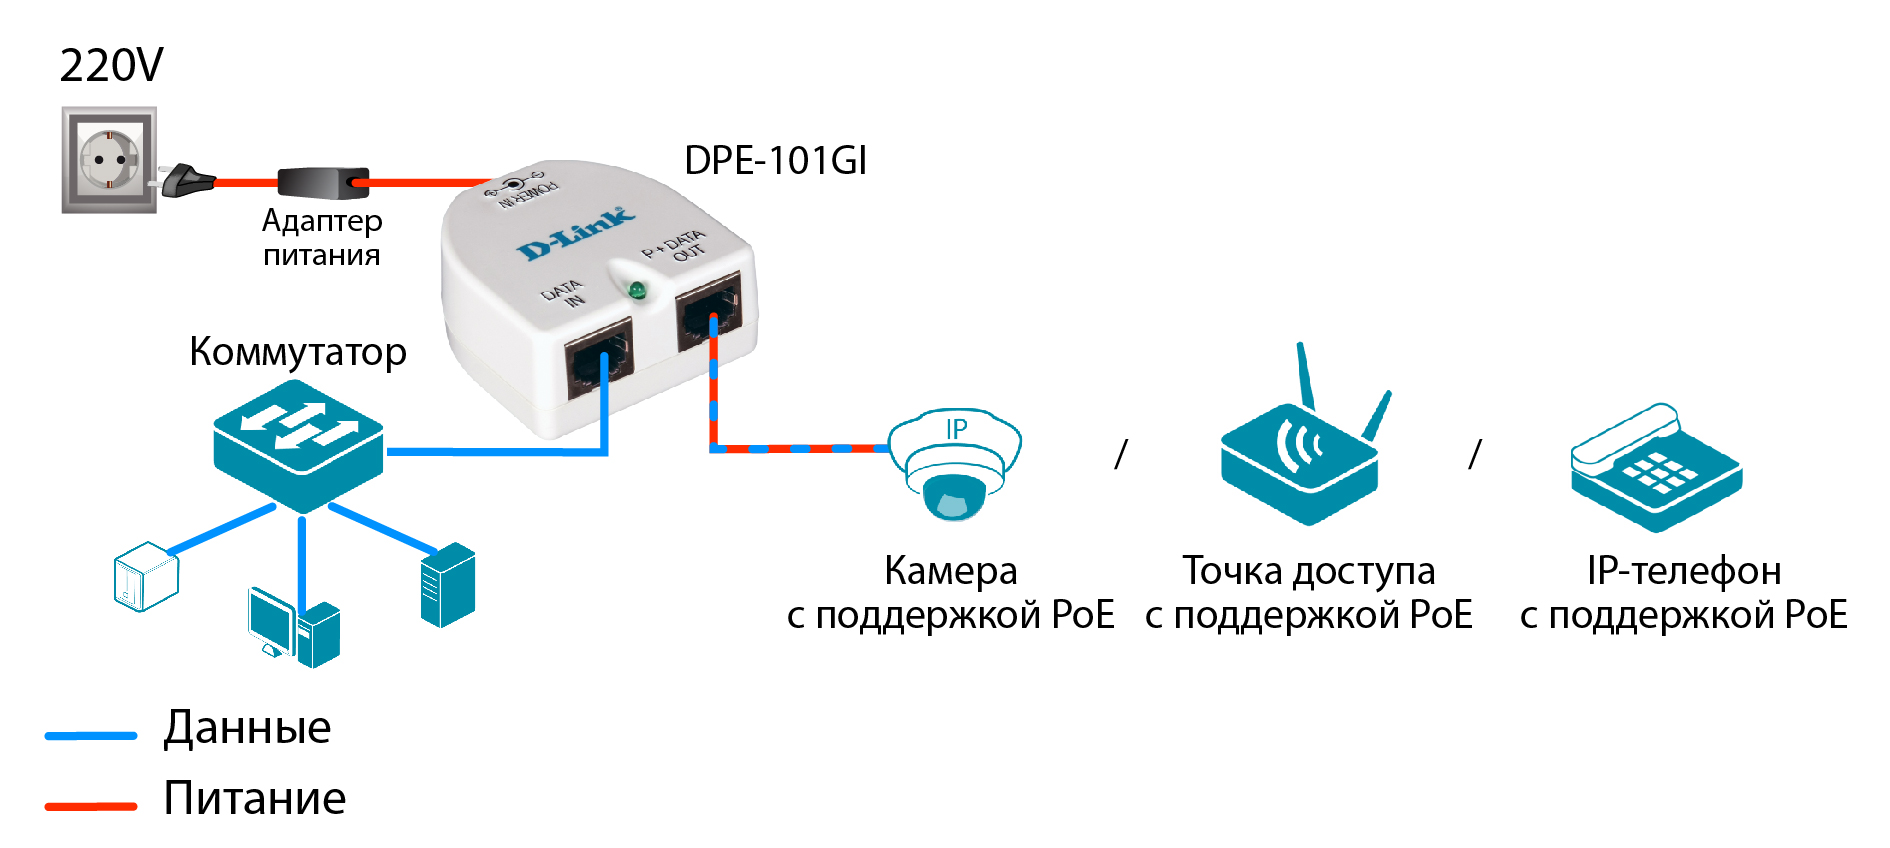 Ps link как подключить. Инжектор POE 12v для IP камер. Схема подключения IP камеры через POE инжектор. Схема включения POE. Блок питания POE инжектора.